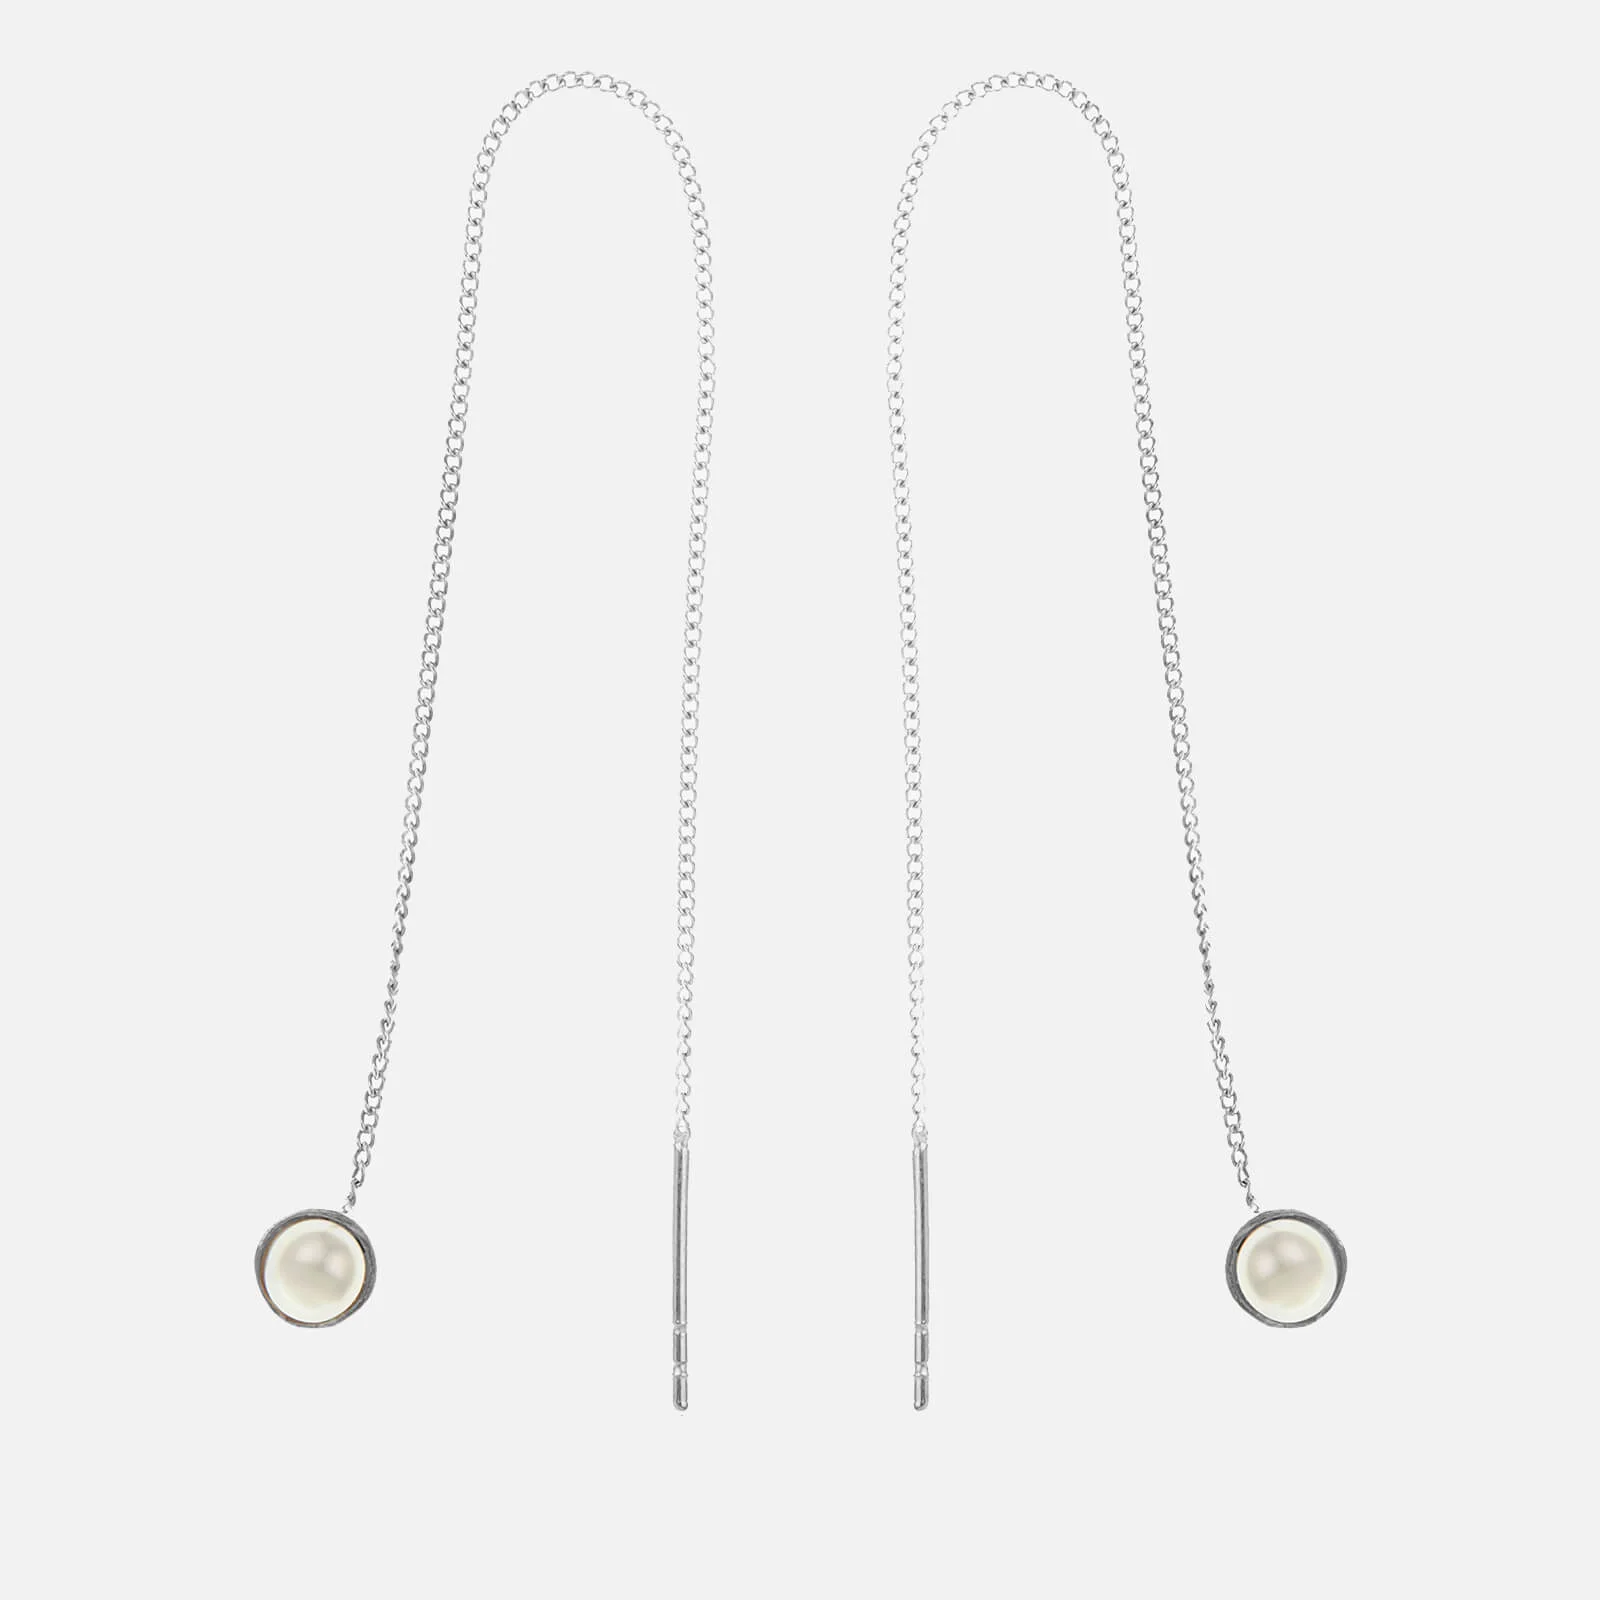 Cornelia Webb Women's Refined Pearl Chain Earrings - Silver Image 1